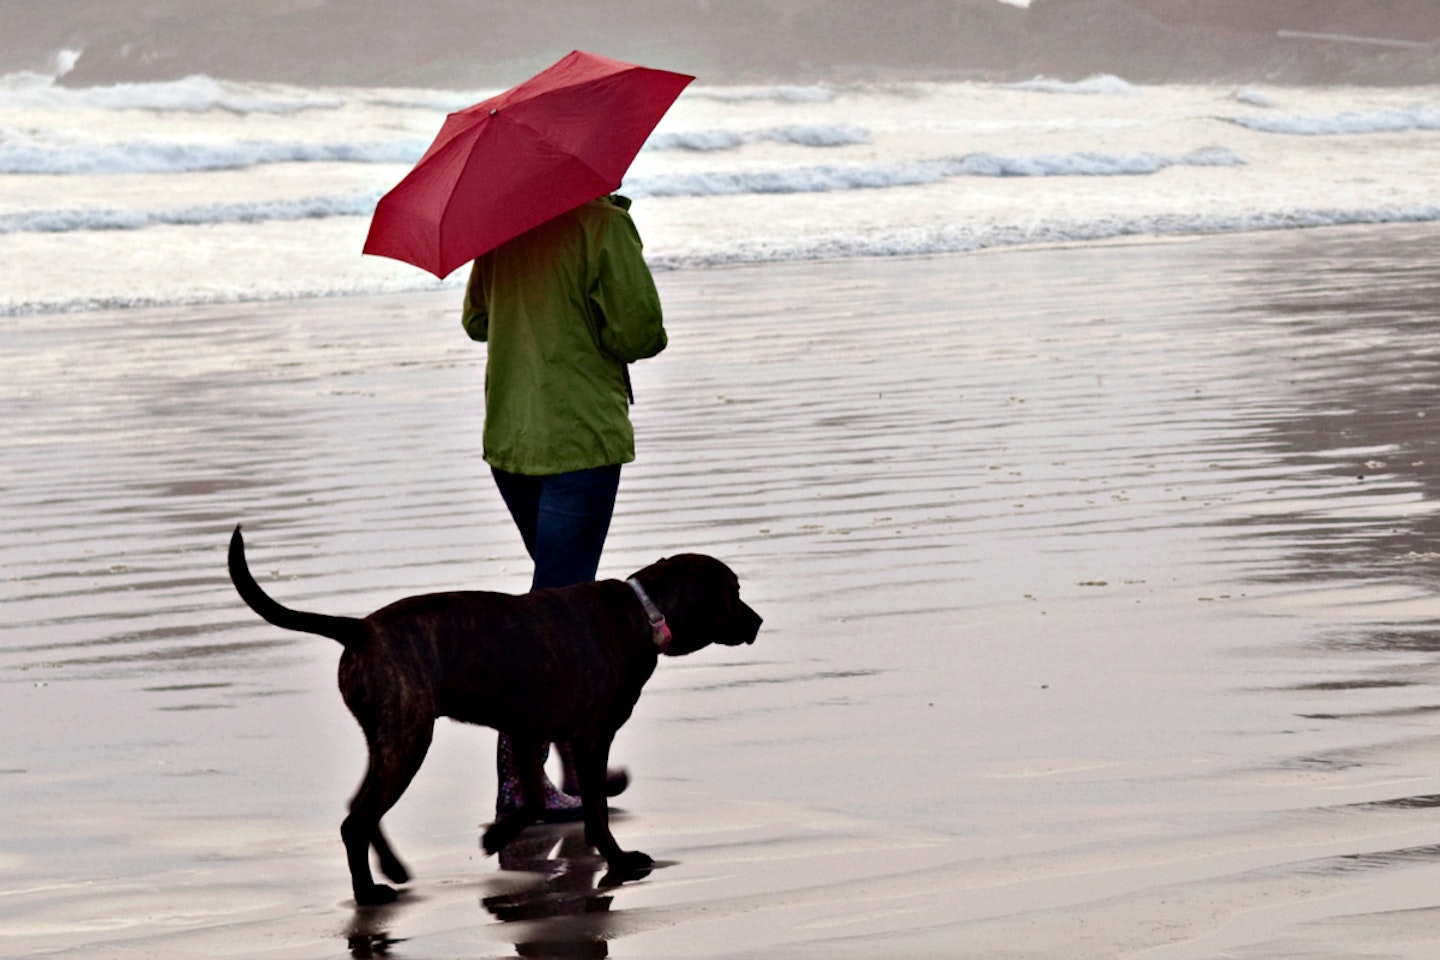 walking-rain-umbrella-dog-beach